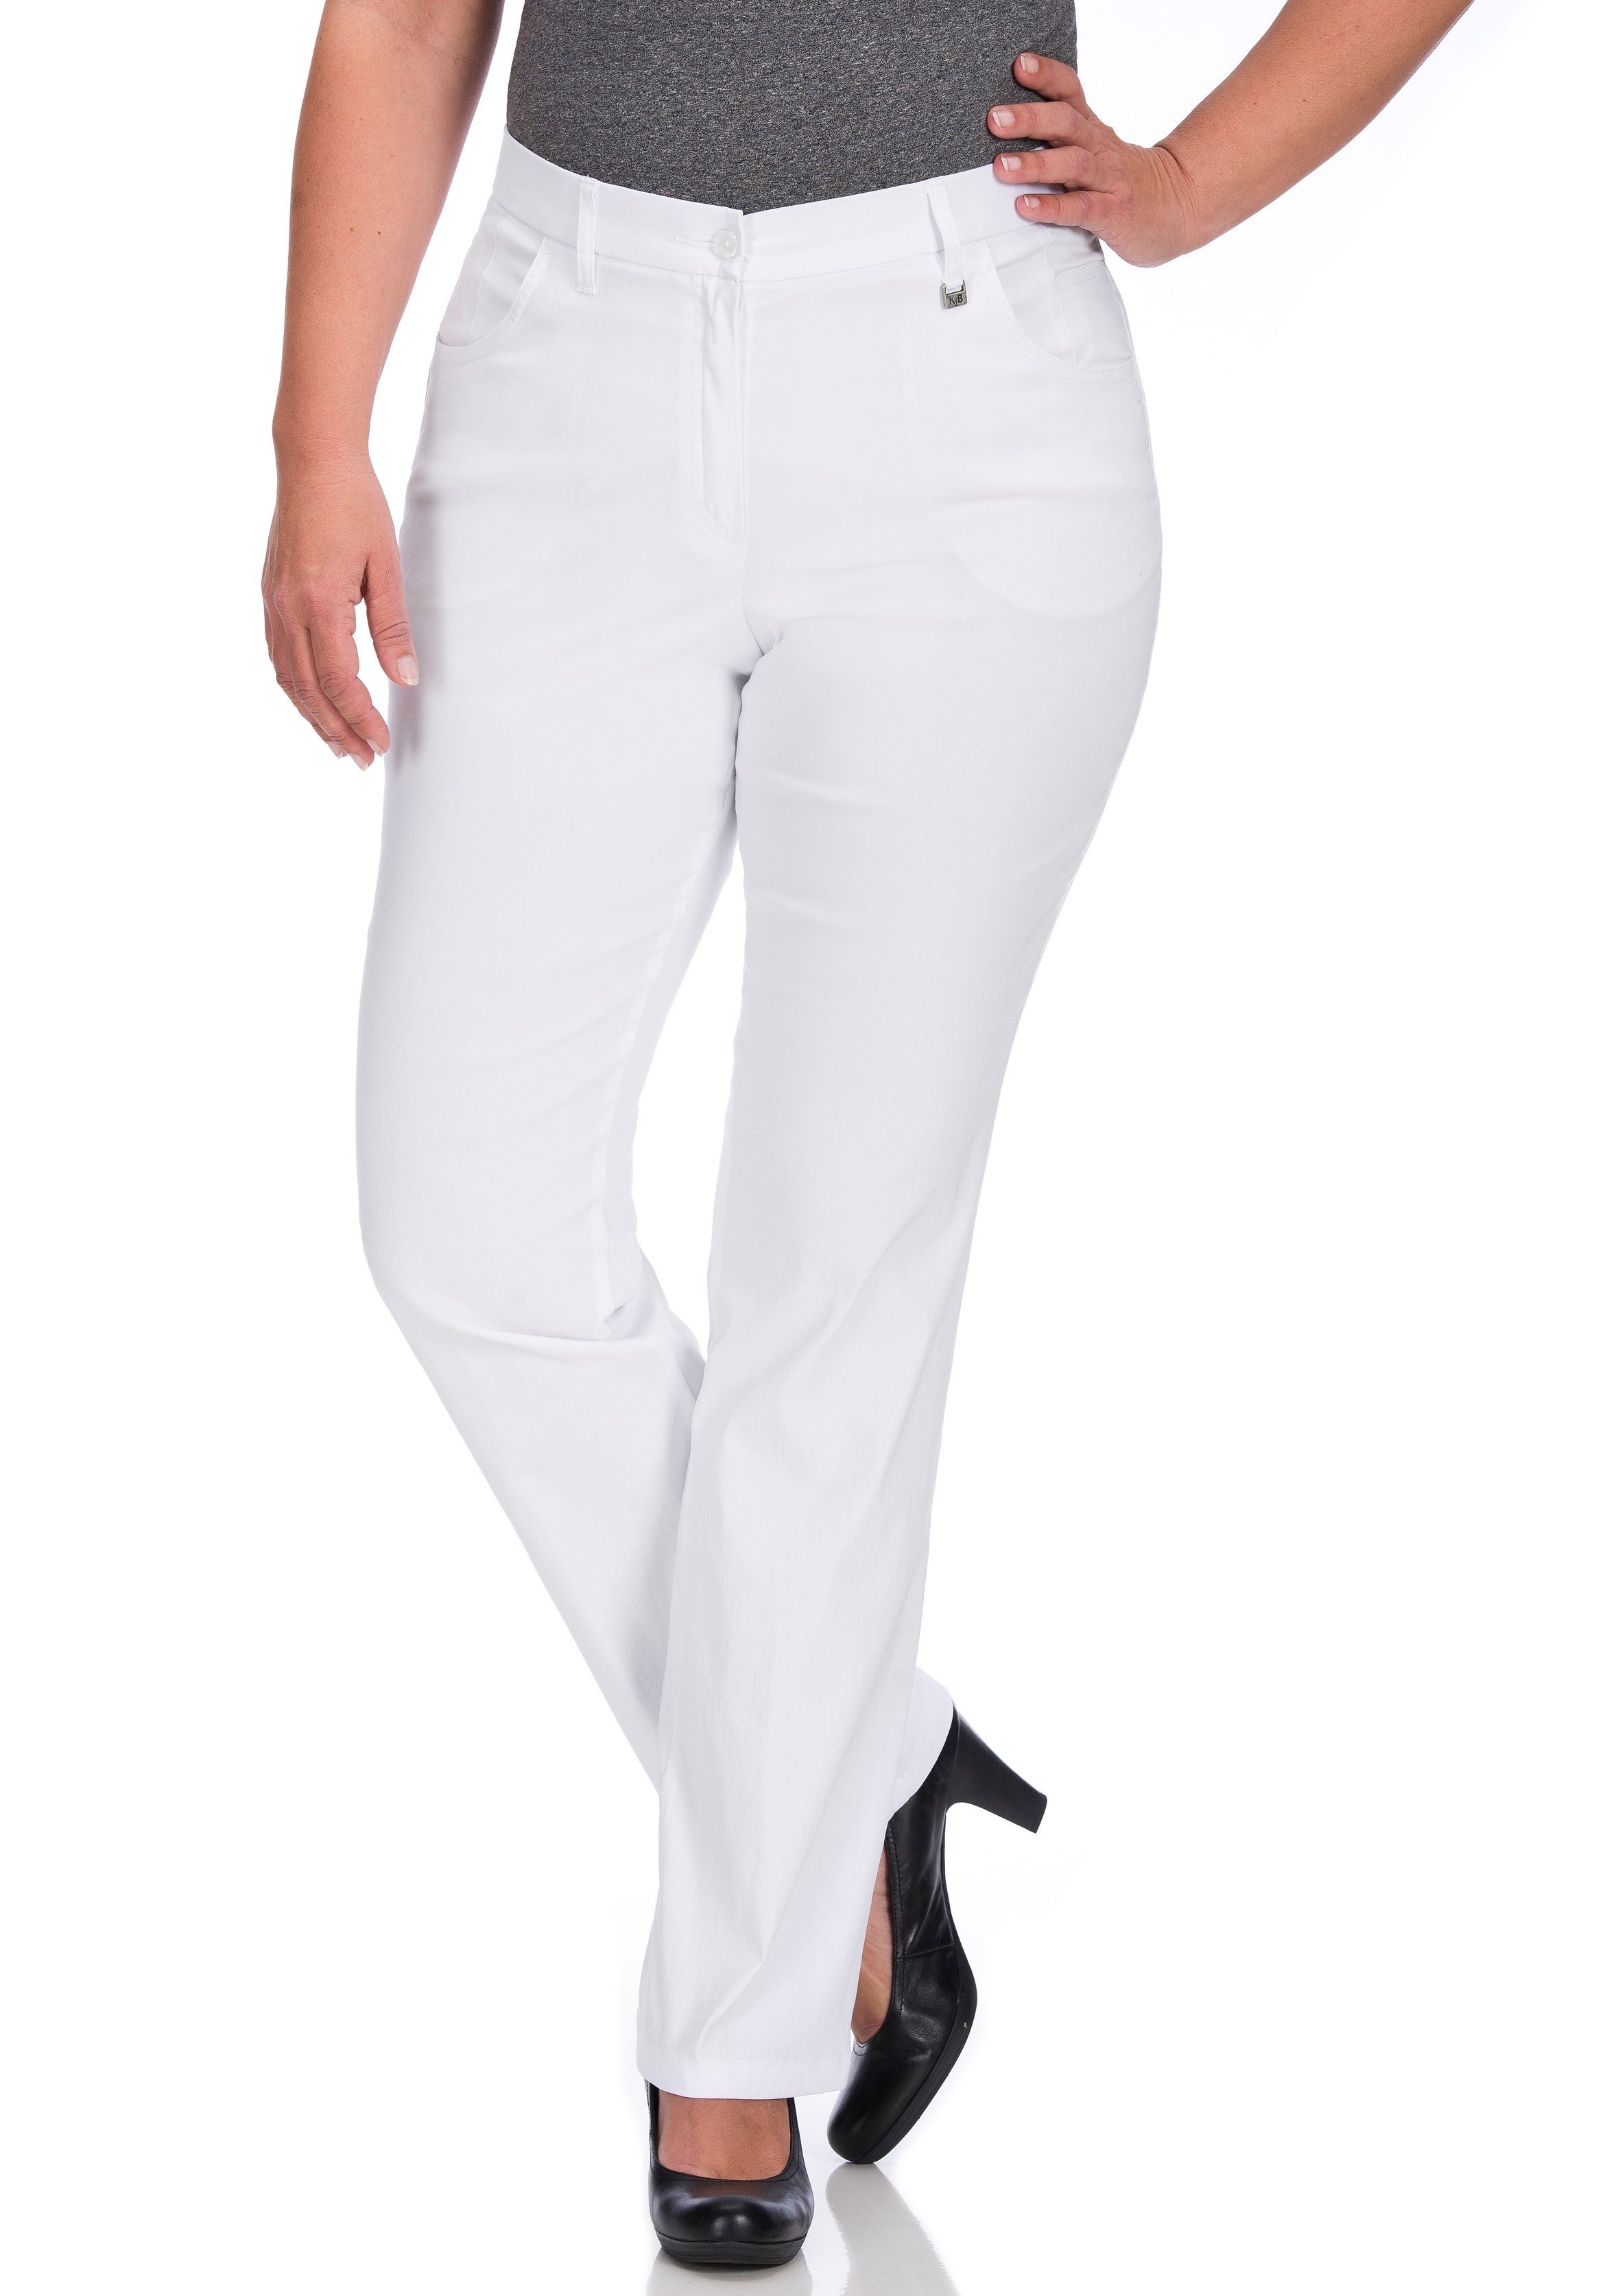 KjBRAND 5-Pocket-Hose Betty Bengaline in bequemer Form weiß | Stretchhosen